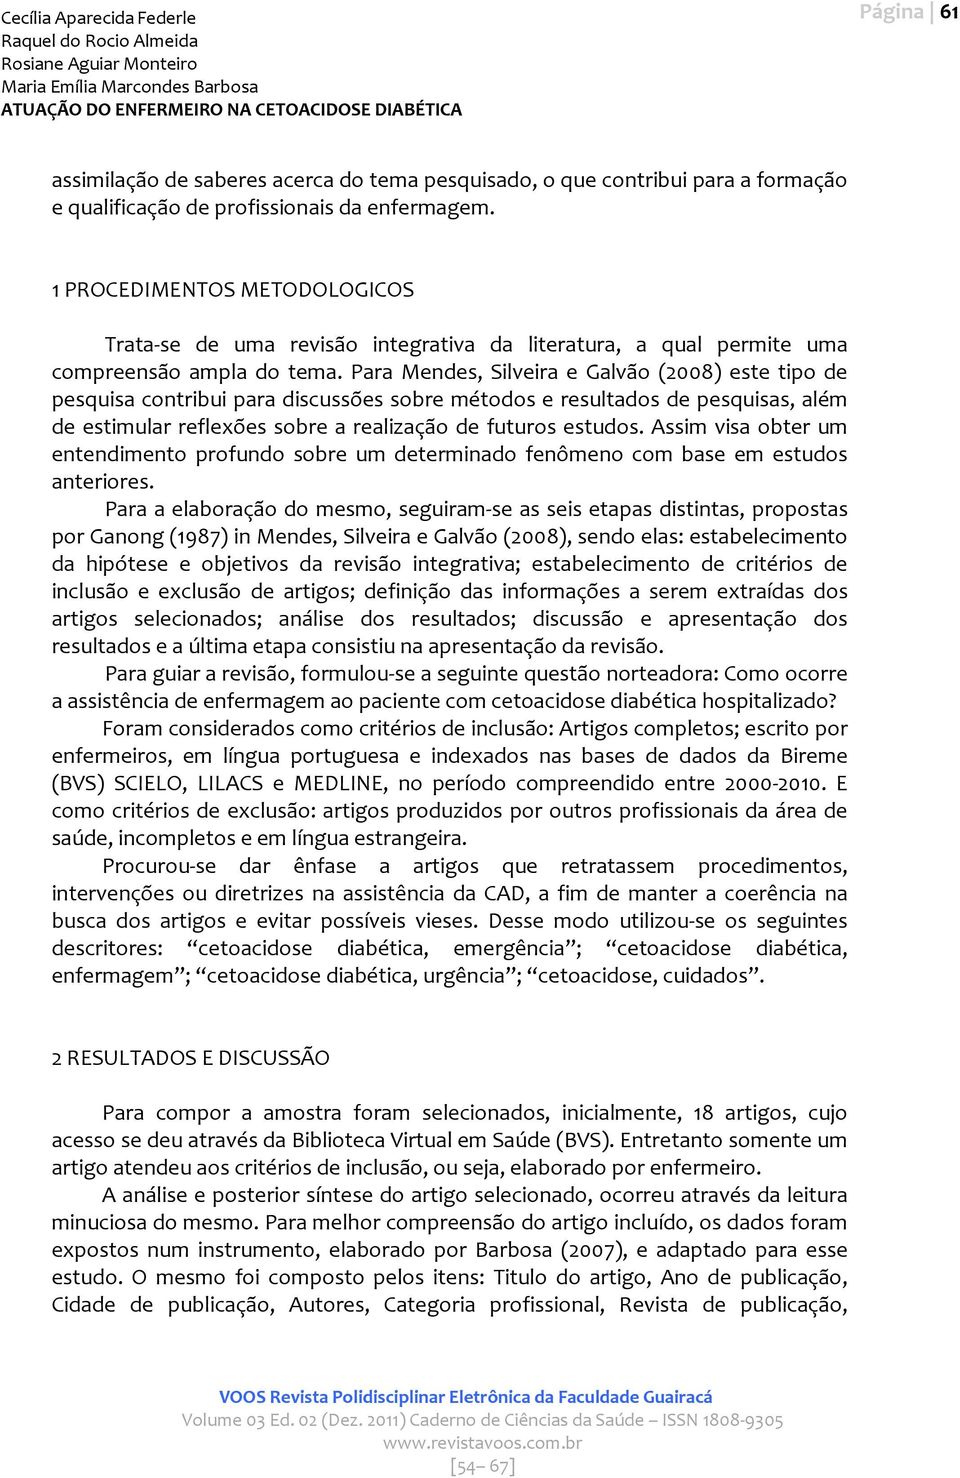 Para Mendes, Silveira e Galvão (2008) este tipo de pesquisa contribui para discussões sobre métodos e resultados de pesquisas, além de estimular reflexões sobre a realização de futuros estudos.